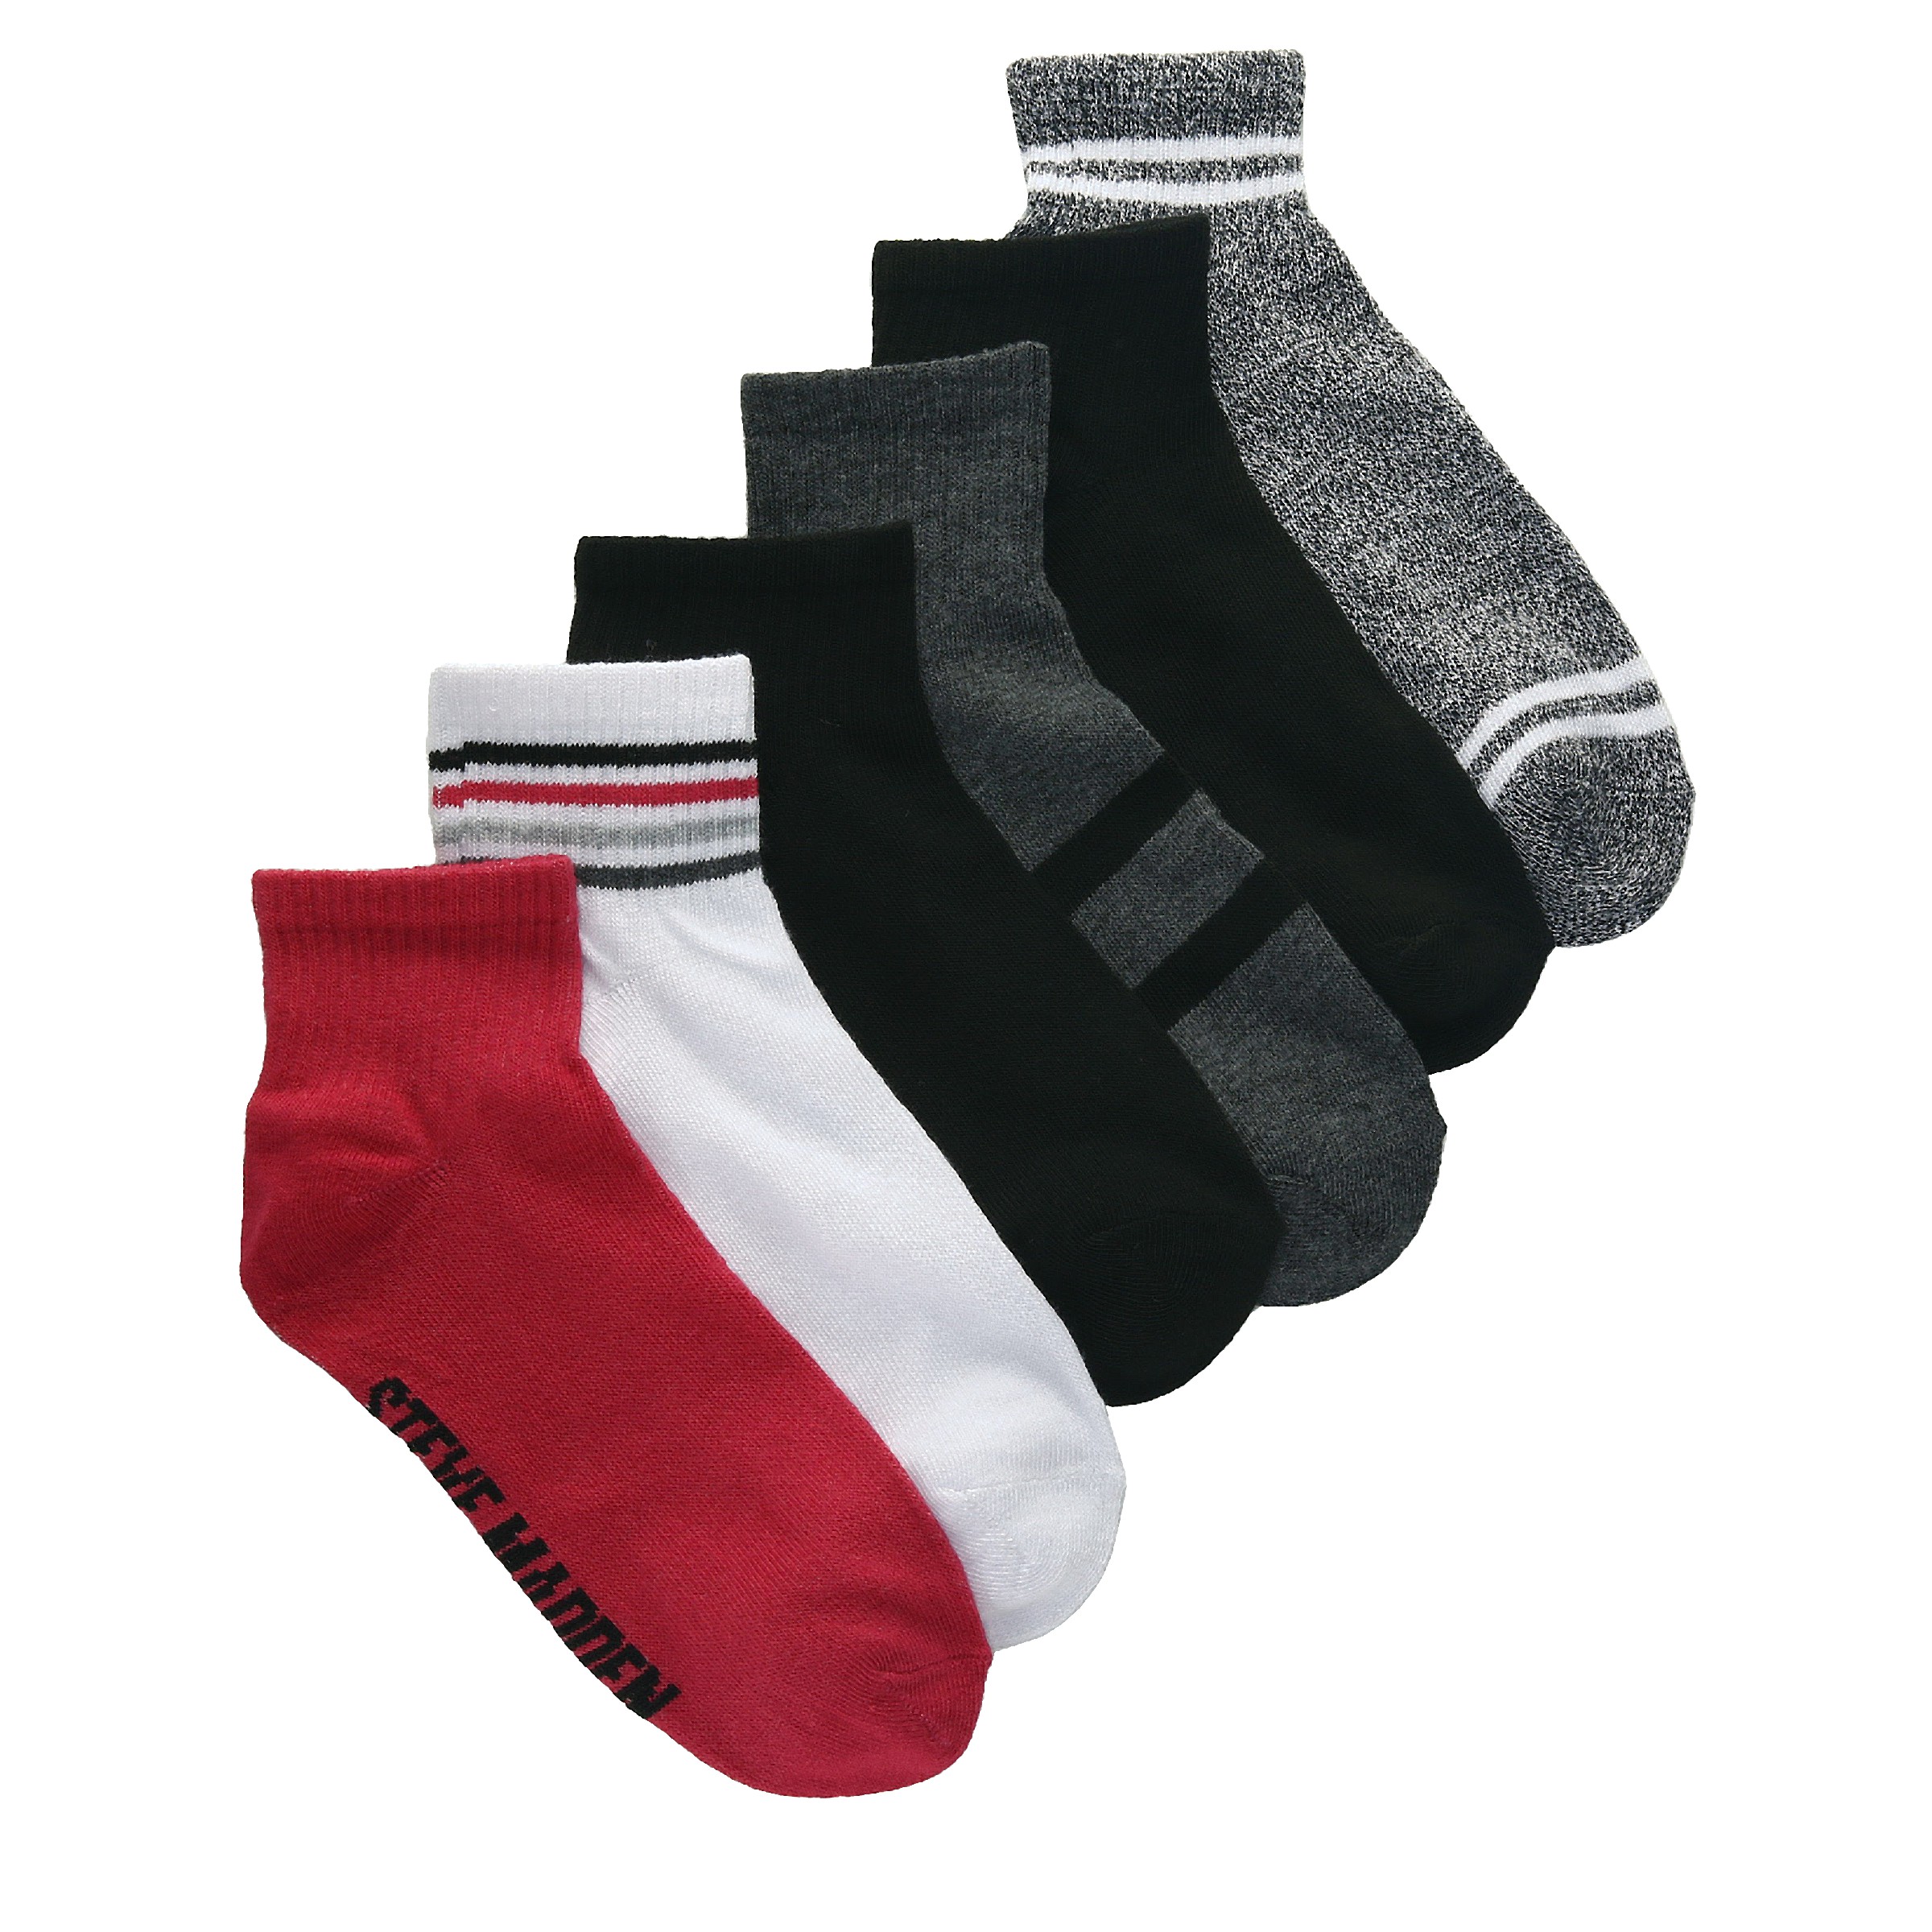 Steve Madden Men's Dress Socks, 6-pair